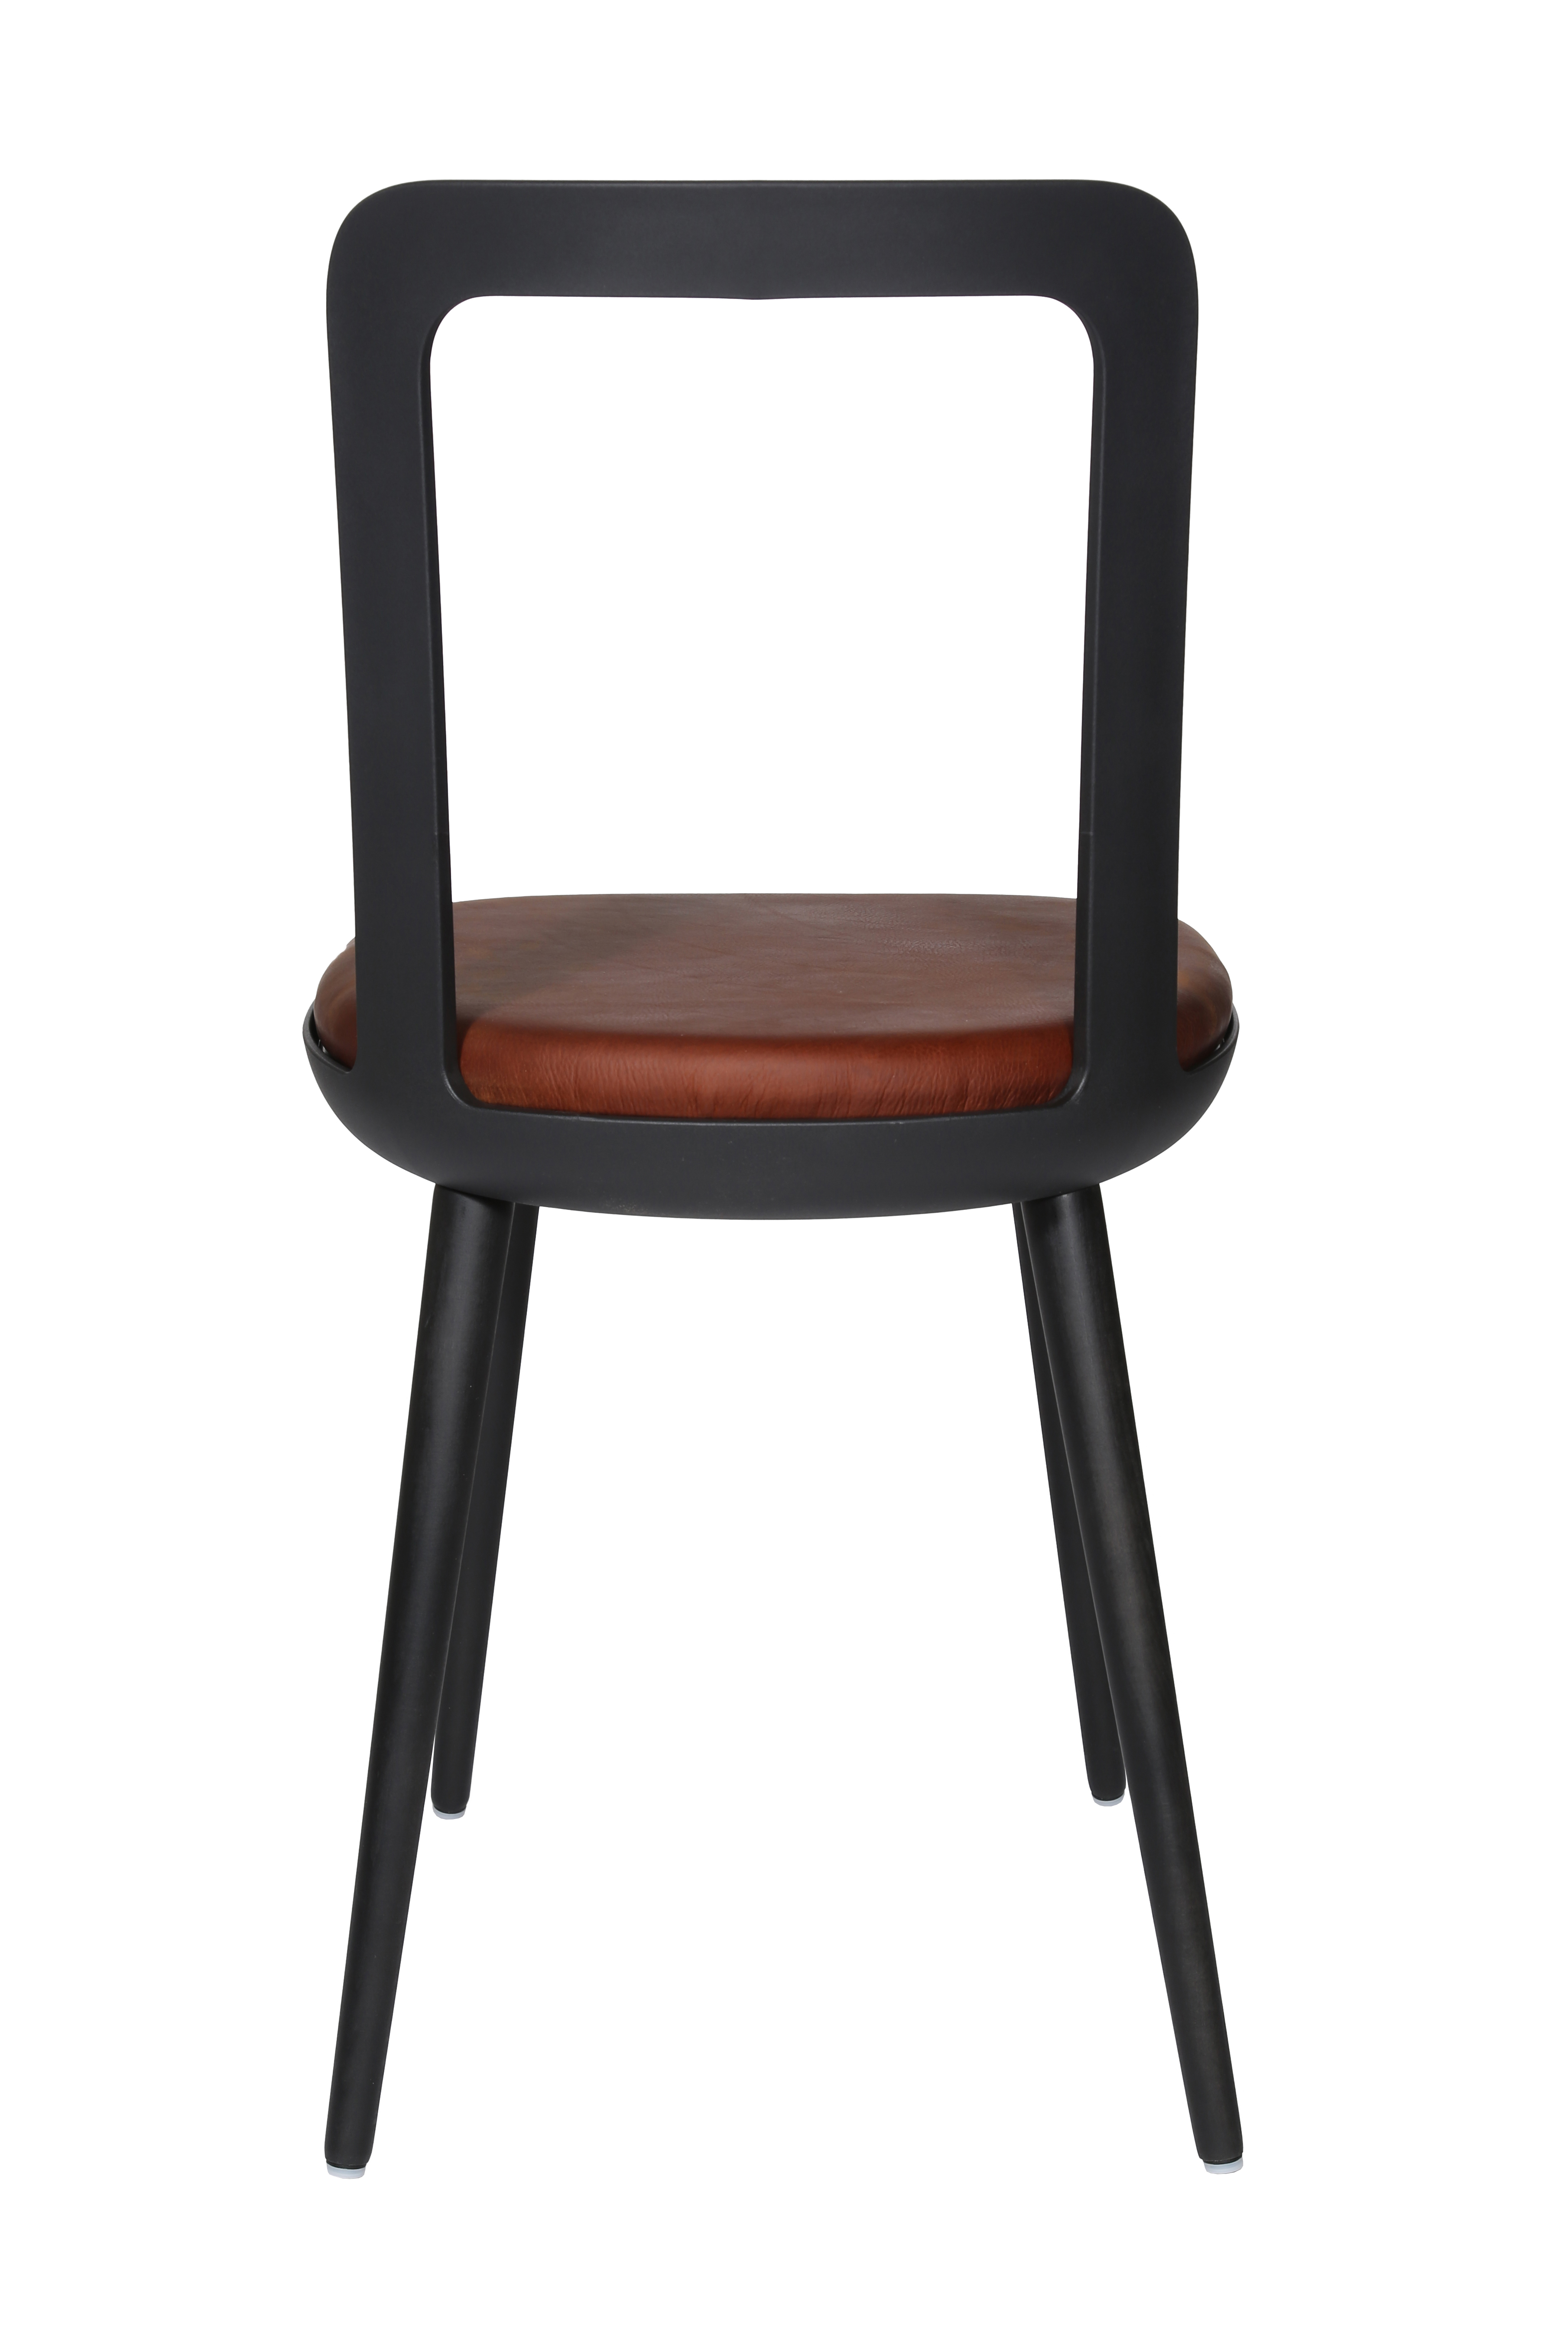 Esszimmerstuhl Wagner W-2020 Chair charcoal black - cognac (Leder)